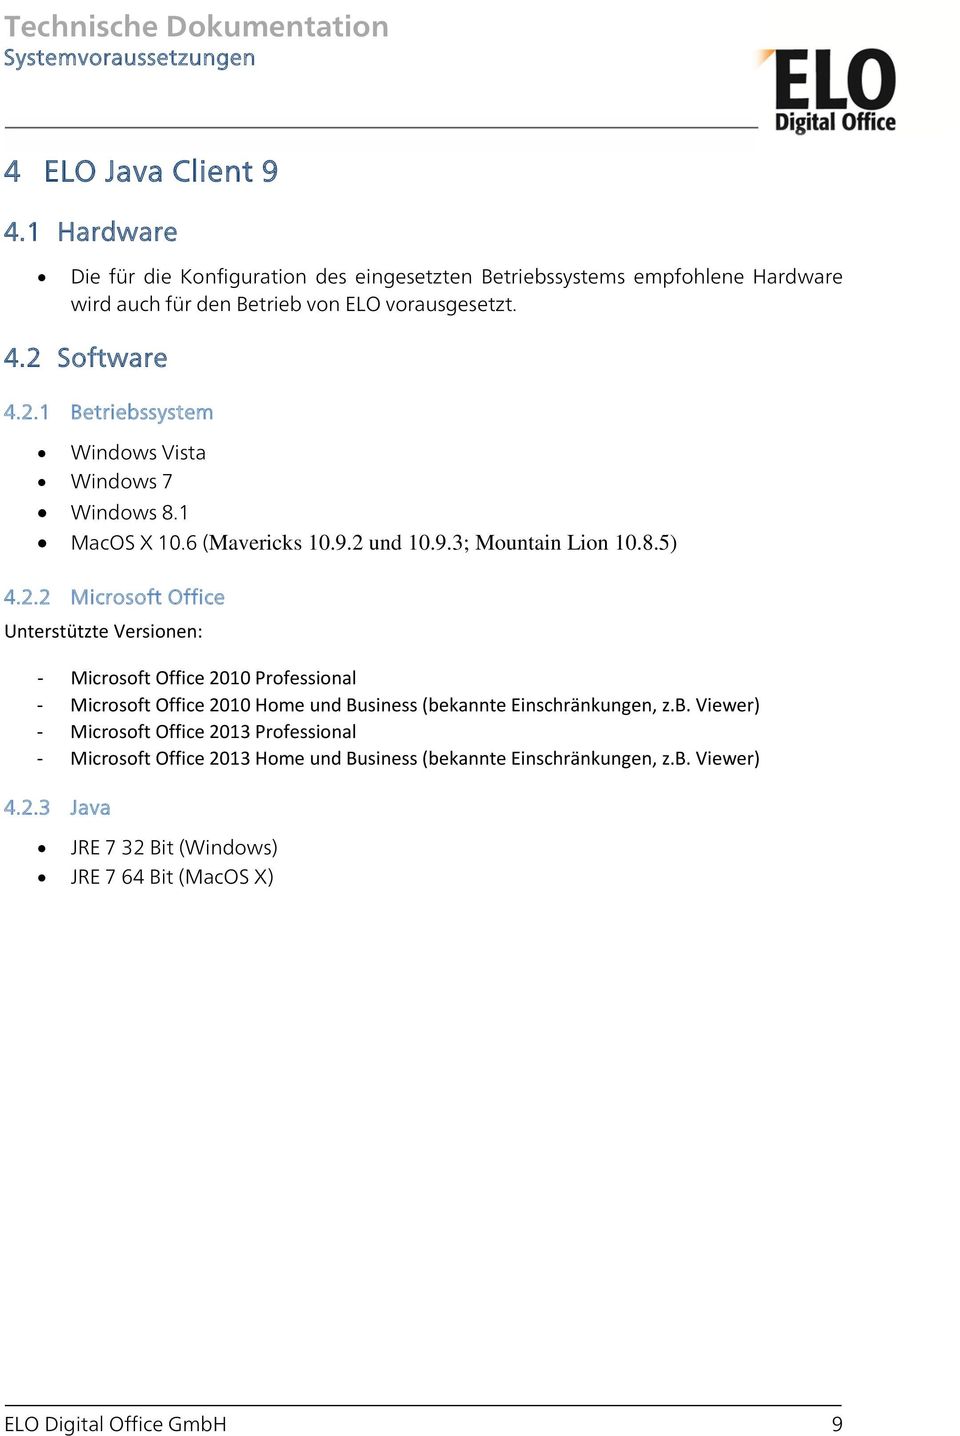 b. Viewer) - Microsoft Office 2013 Professional - Microsoft Office 2013 Home und Business (bekannte Einschränkungen, z.b. Viewer) 4.2.3 Java JRE 7 32 Bit (Windows) JRE 7 64 Bit (MacOS X) ELO Digital Office GmbH 9